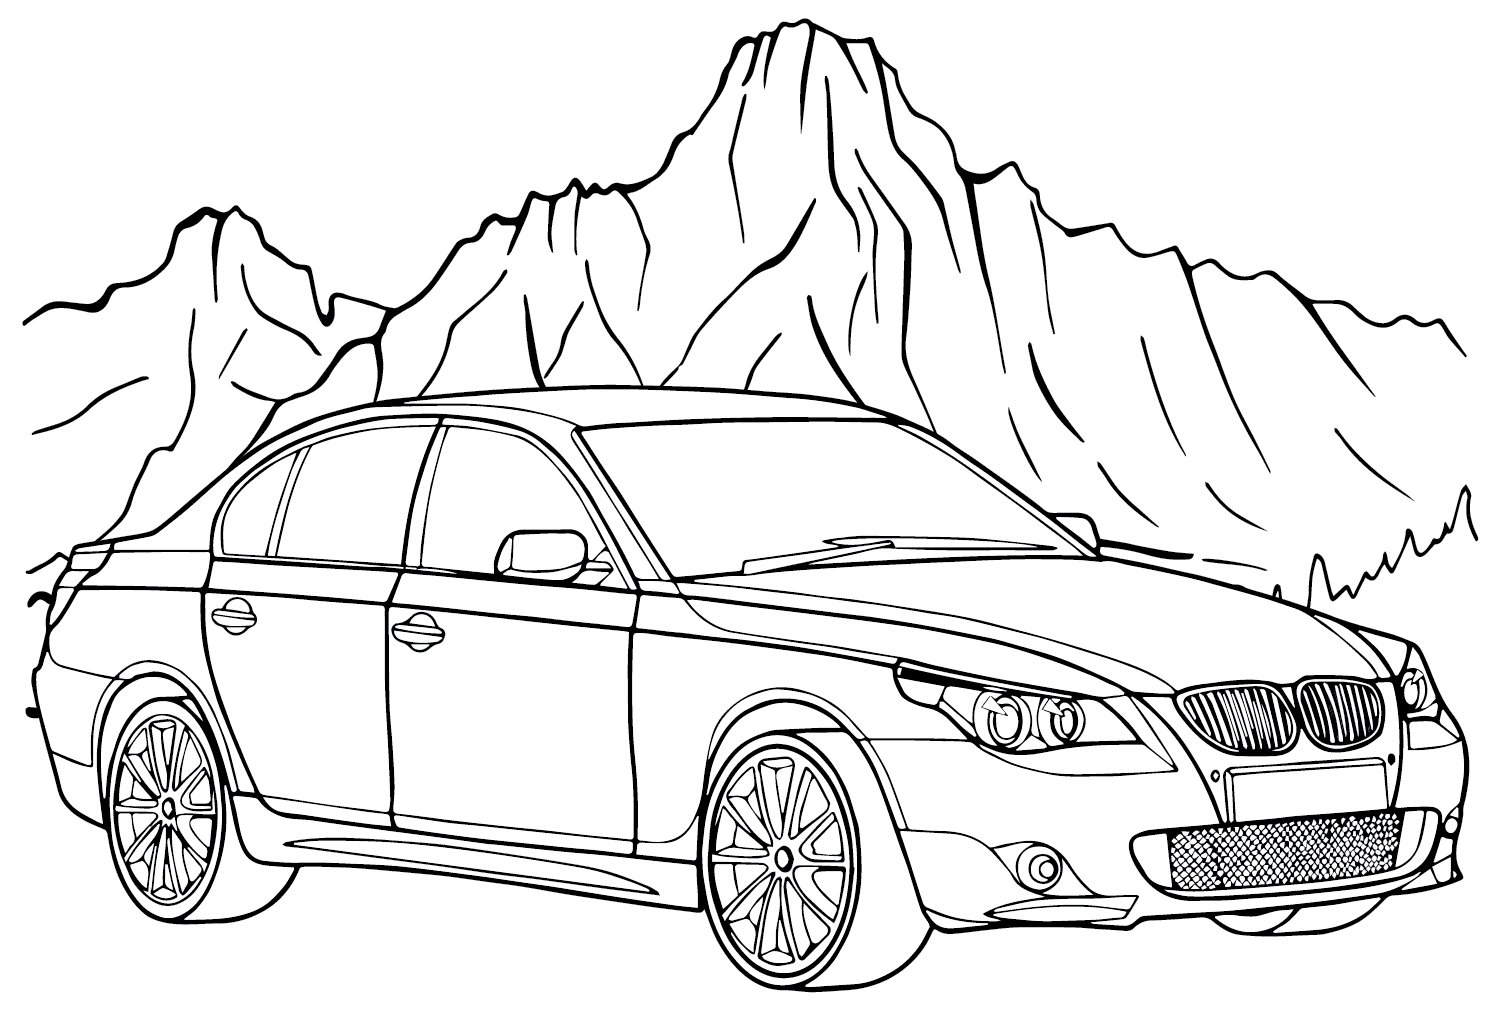 Página para colorir do BMW X6 da BMW